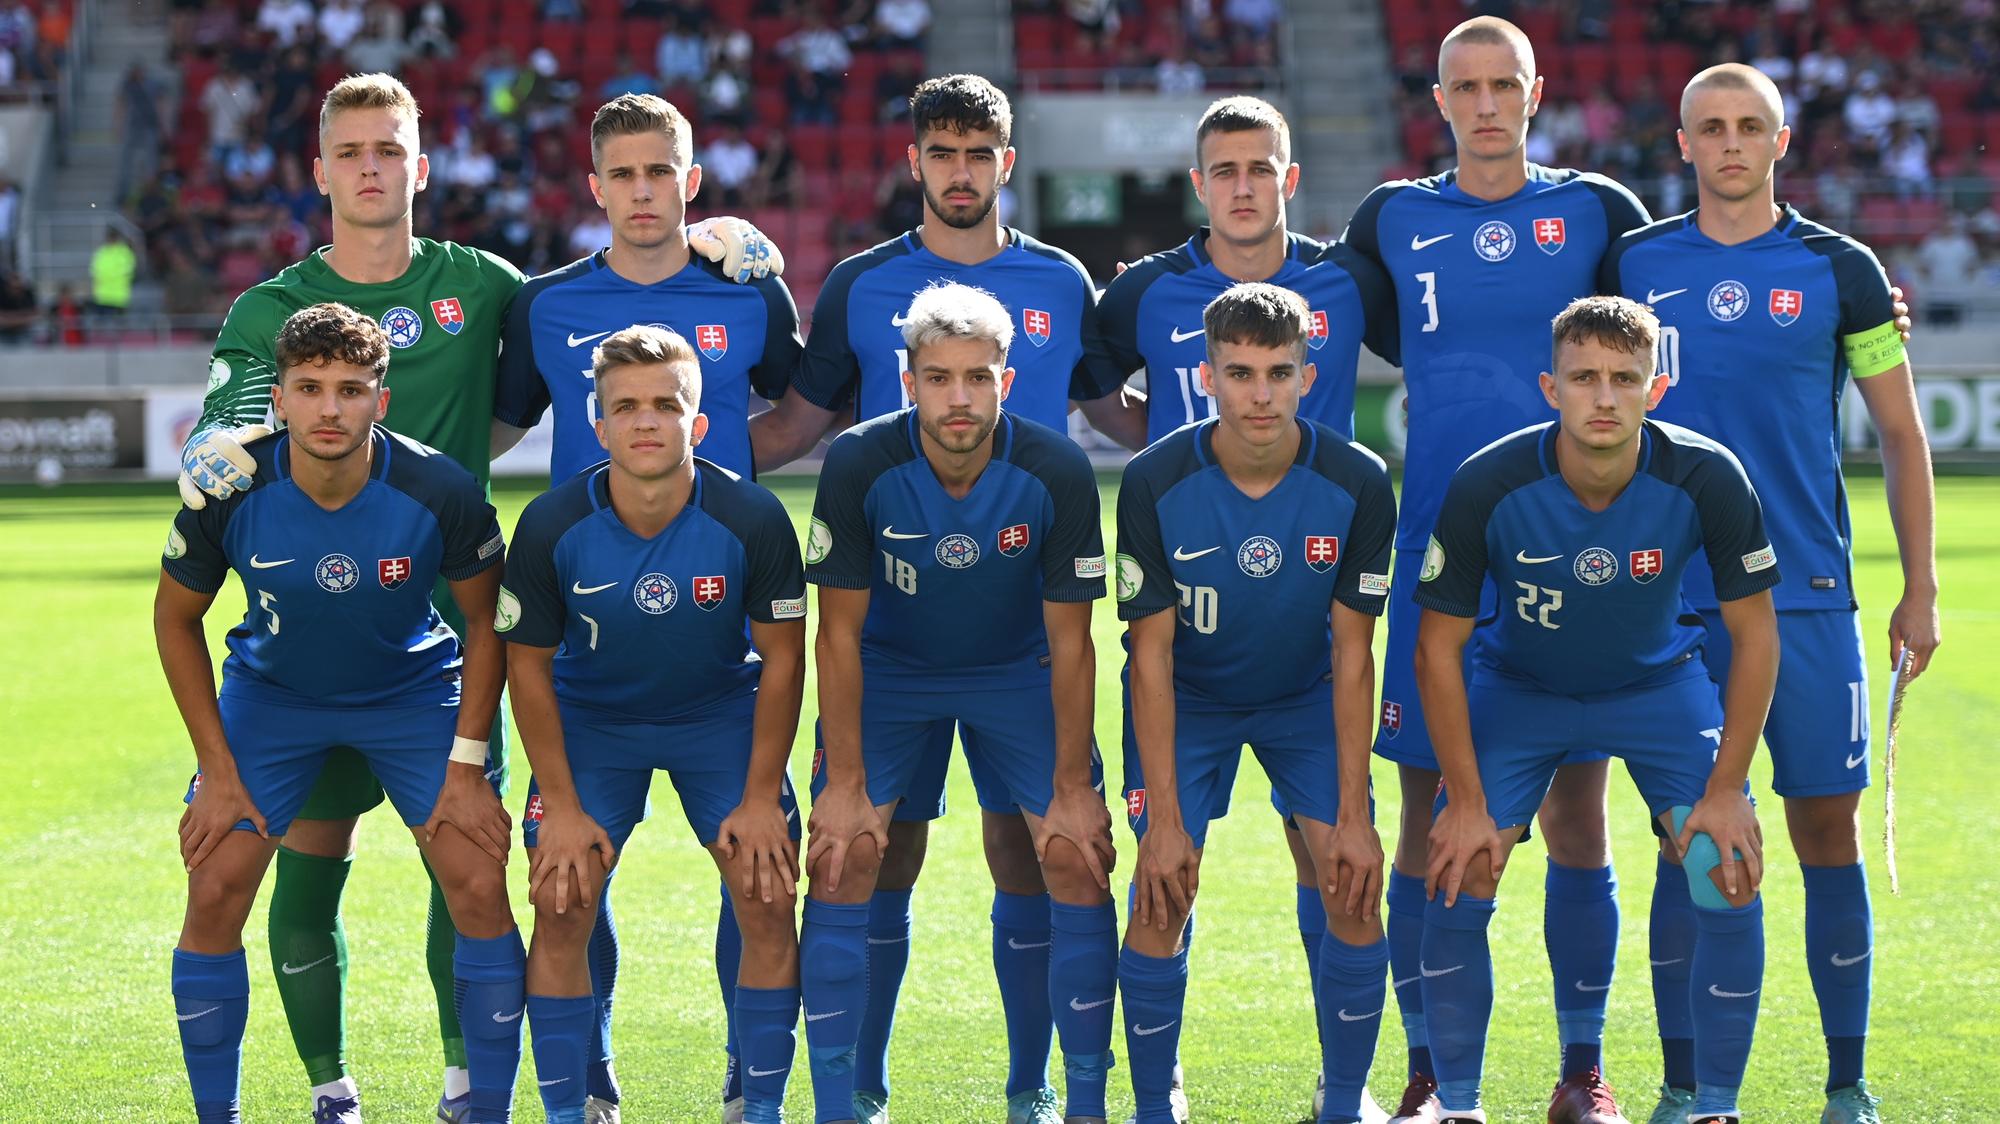 Analýza zápasu Rumunsko 19 – Slovensko 19: Do tretice vyhráme!